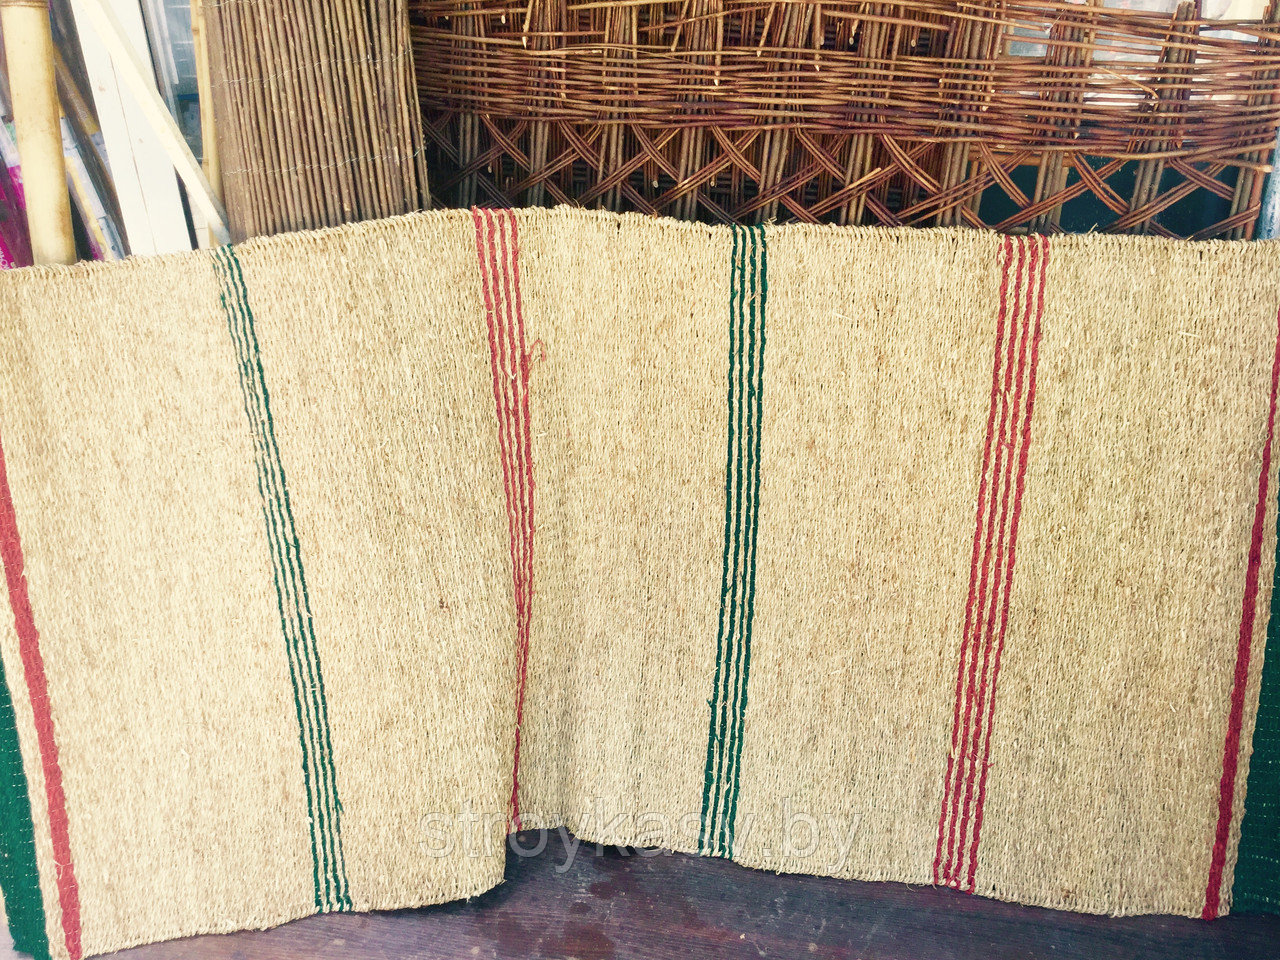 Циновка-коврик из рисовой соломы 90х150